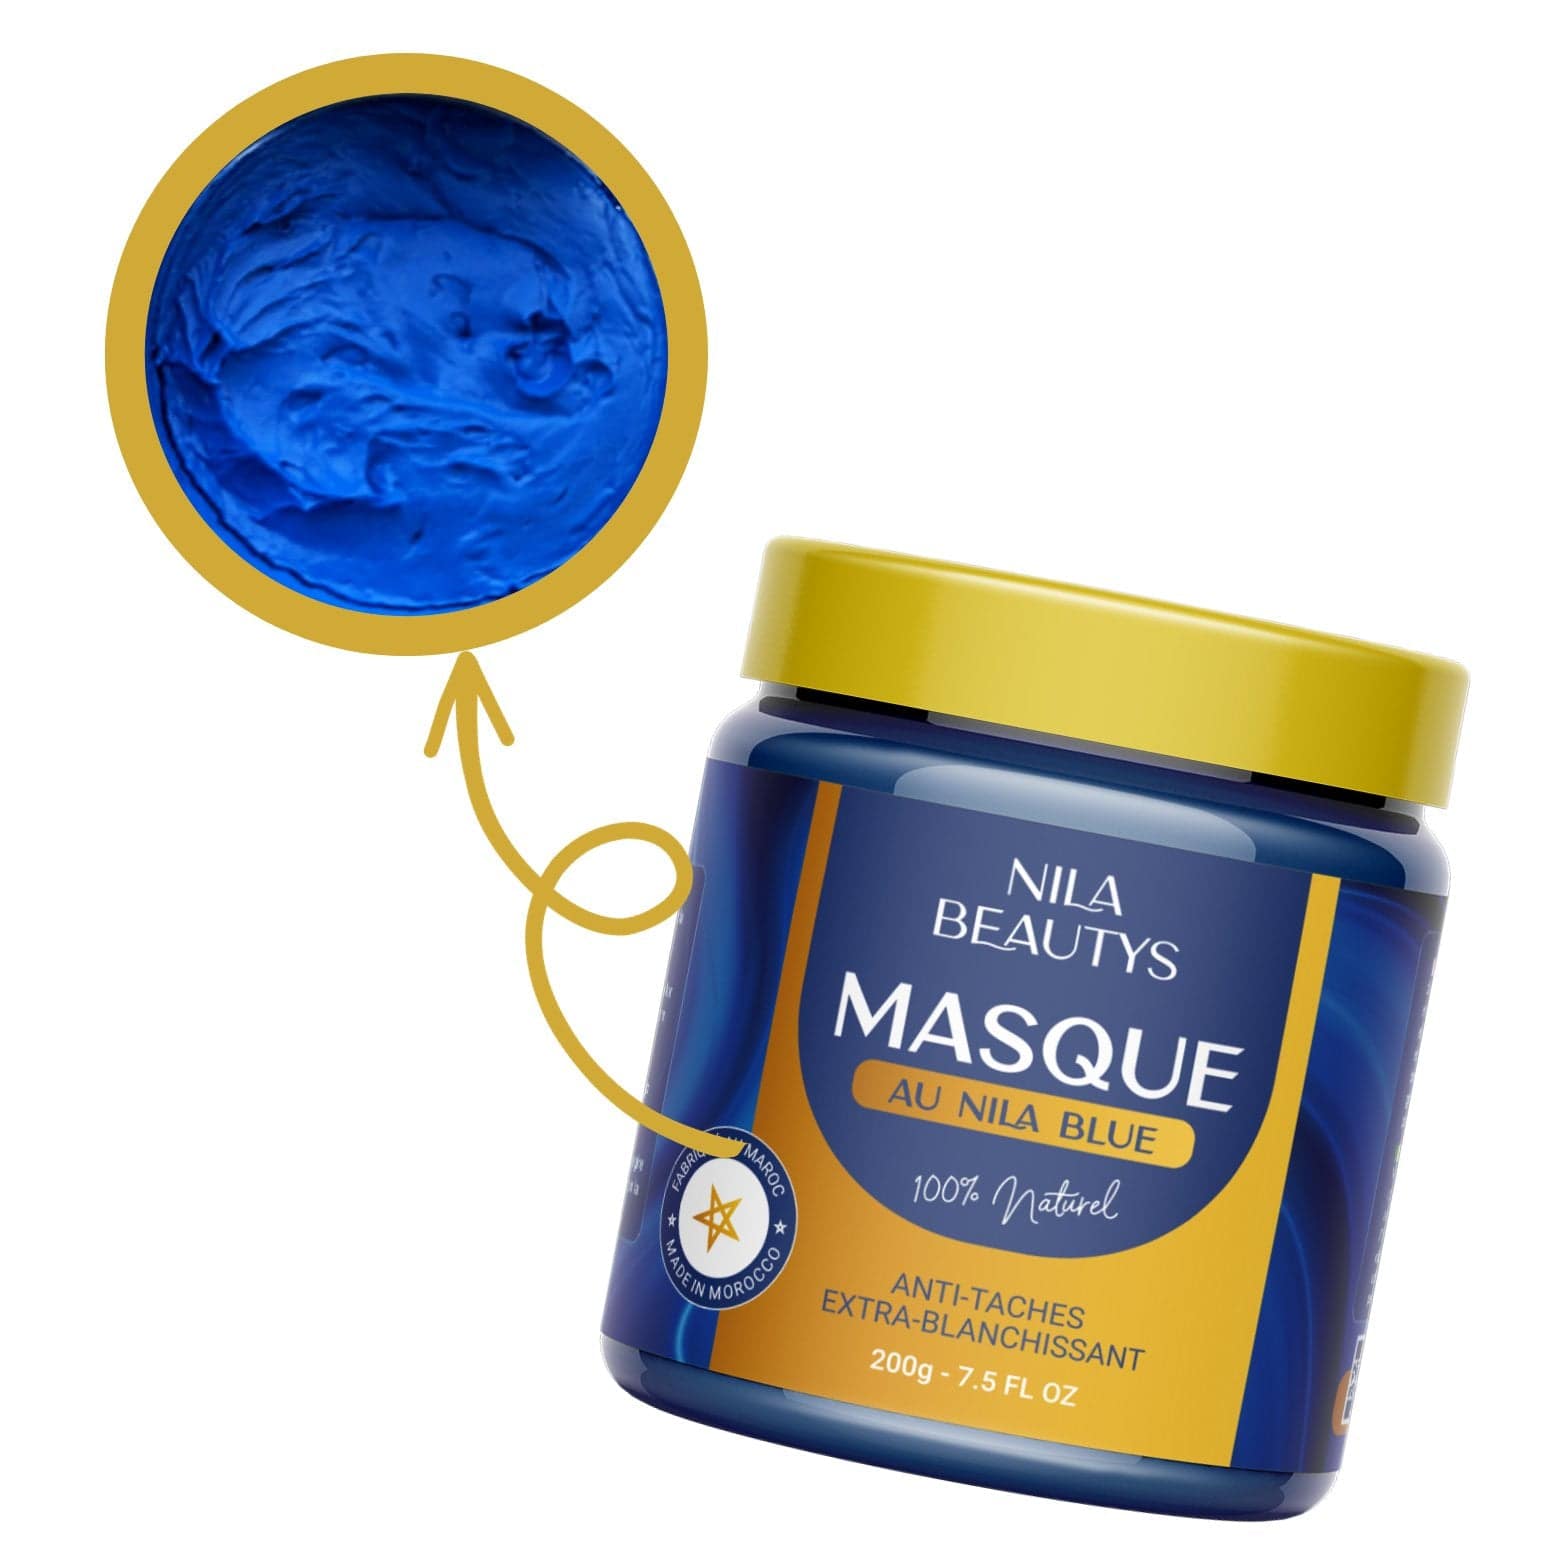 Capilys Masque nila bleu - Marocain - 100 g à prix pas cher